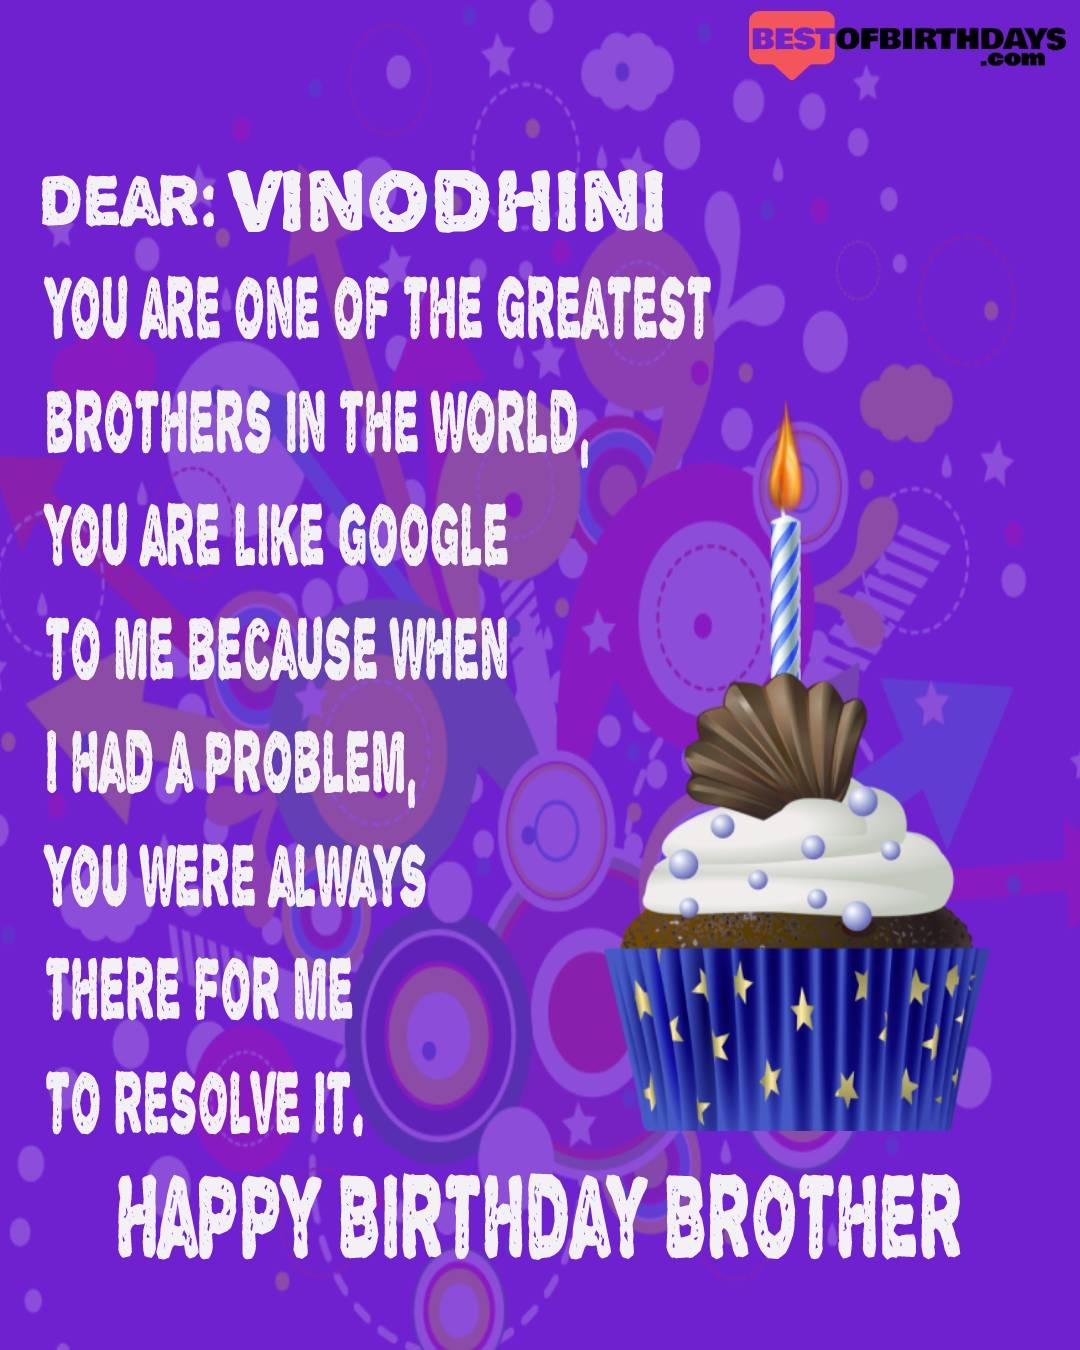 Happy birthday vinodhini bhai brother bro